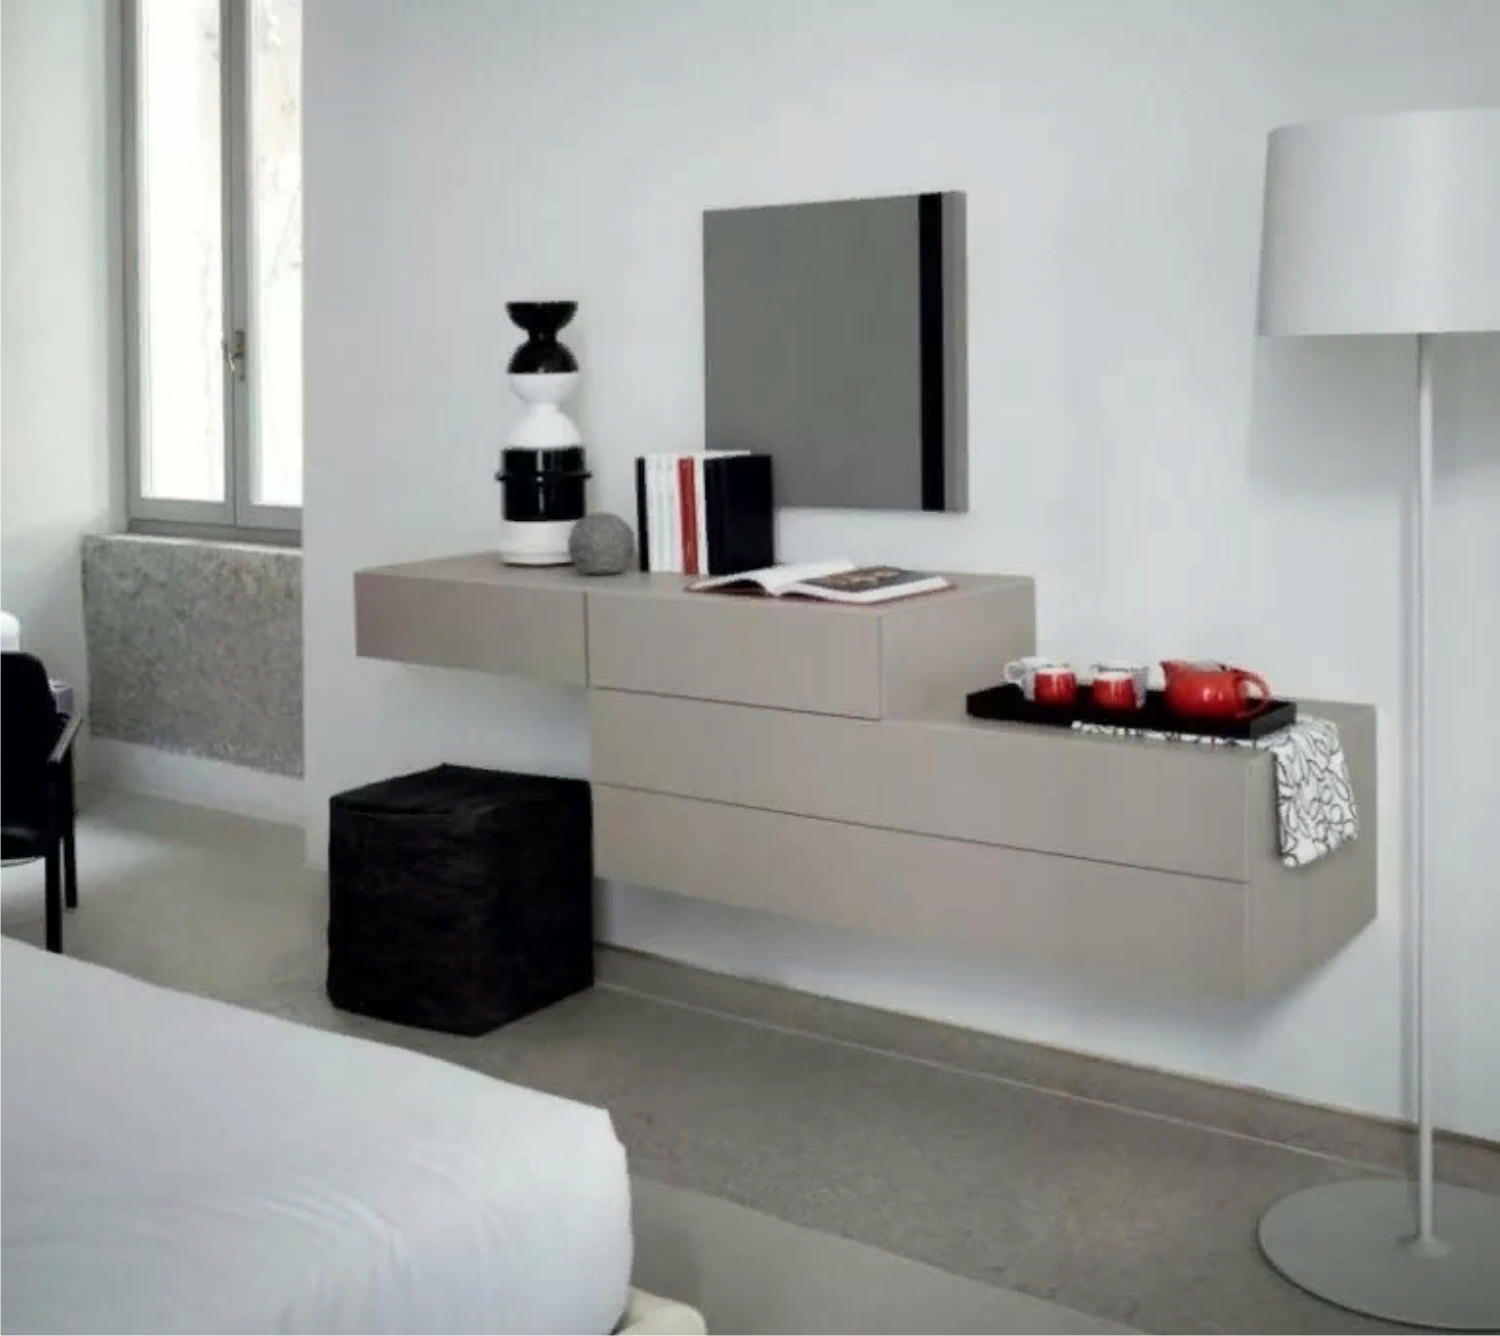 Комод с зеркалом в спальню — примеры размещения мебели, фото идеи красивого дизайна, выбор цвета, формы и стиля